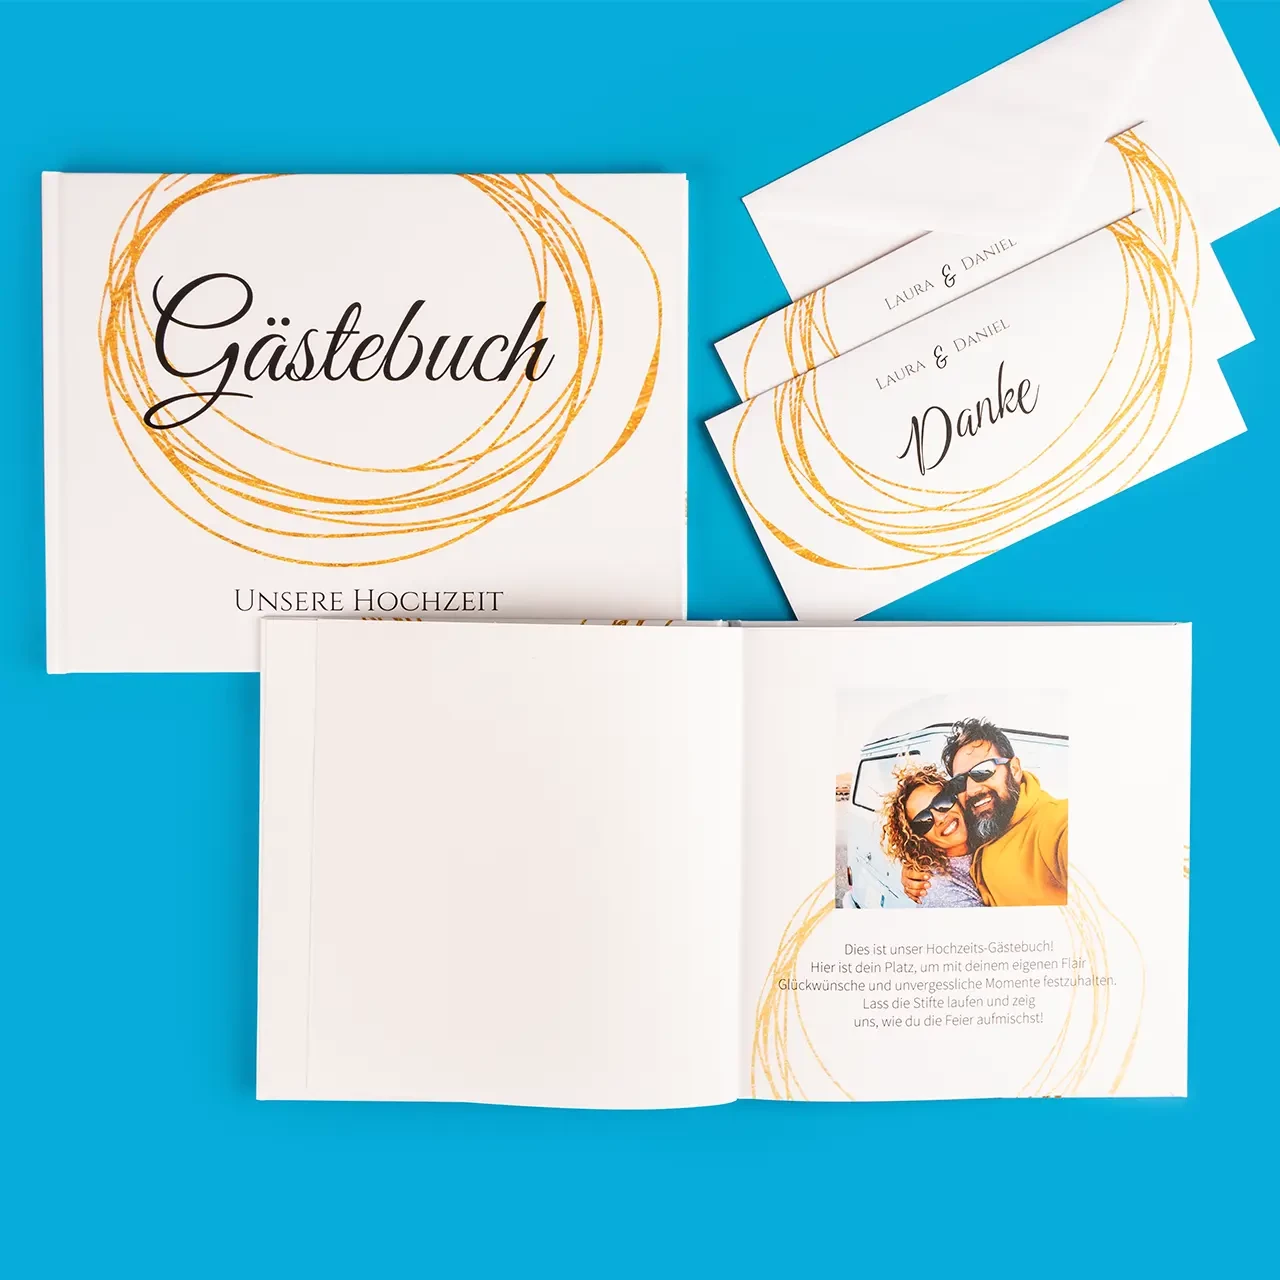 Zu sehen ist ein Gästebuch mit goldenen Designelementen für die Hochzeit, daneben liegen Dankeskarten im selben Stil. Genau so geht Hochzeit mit Stil.